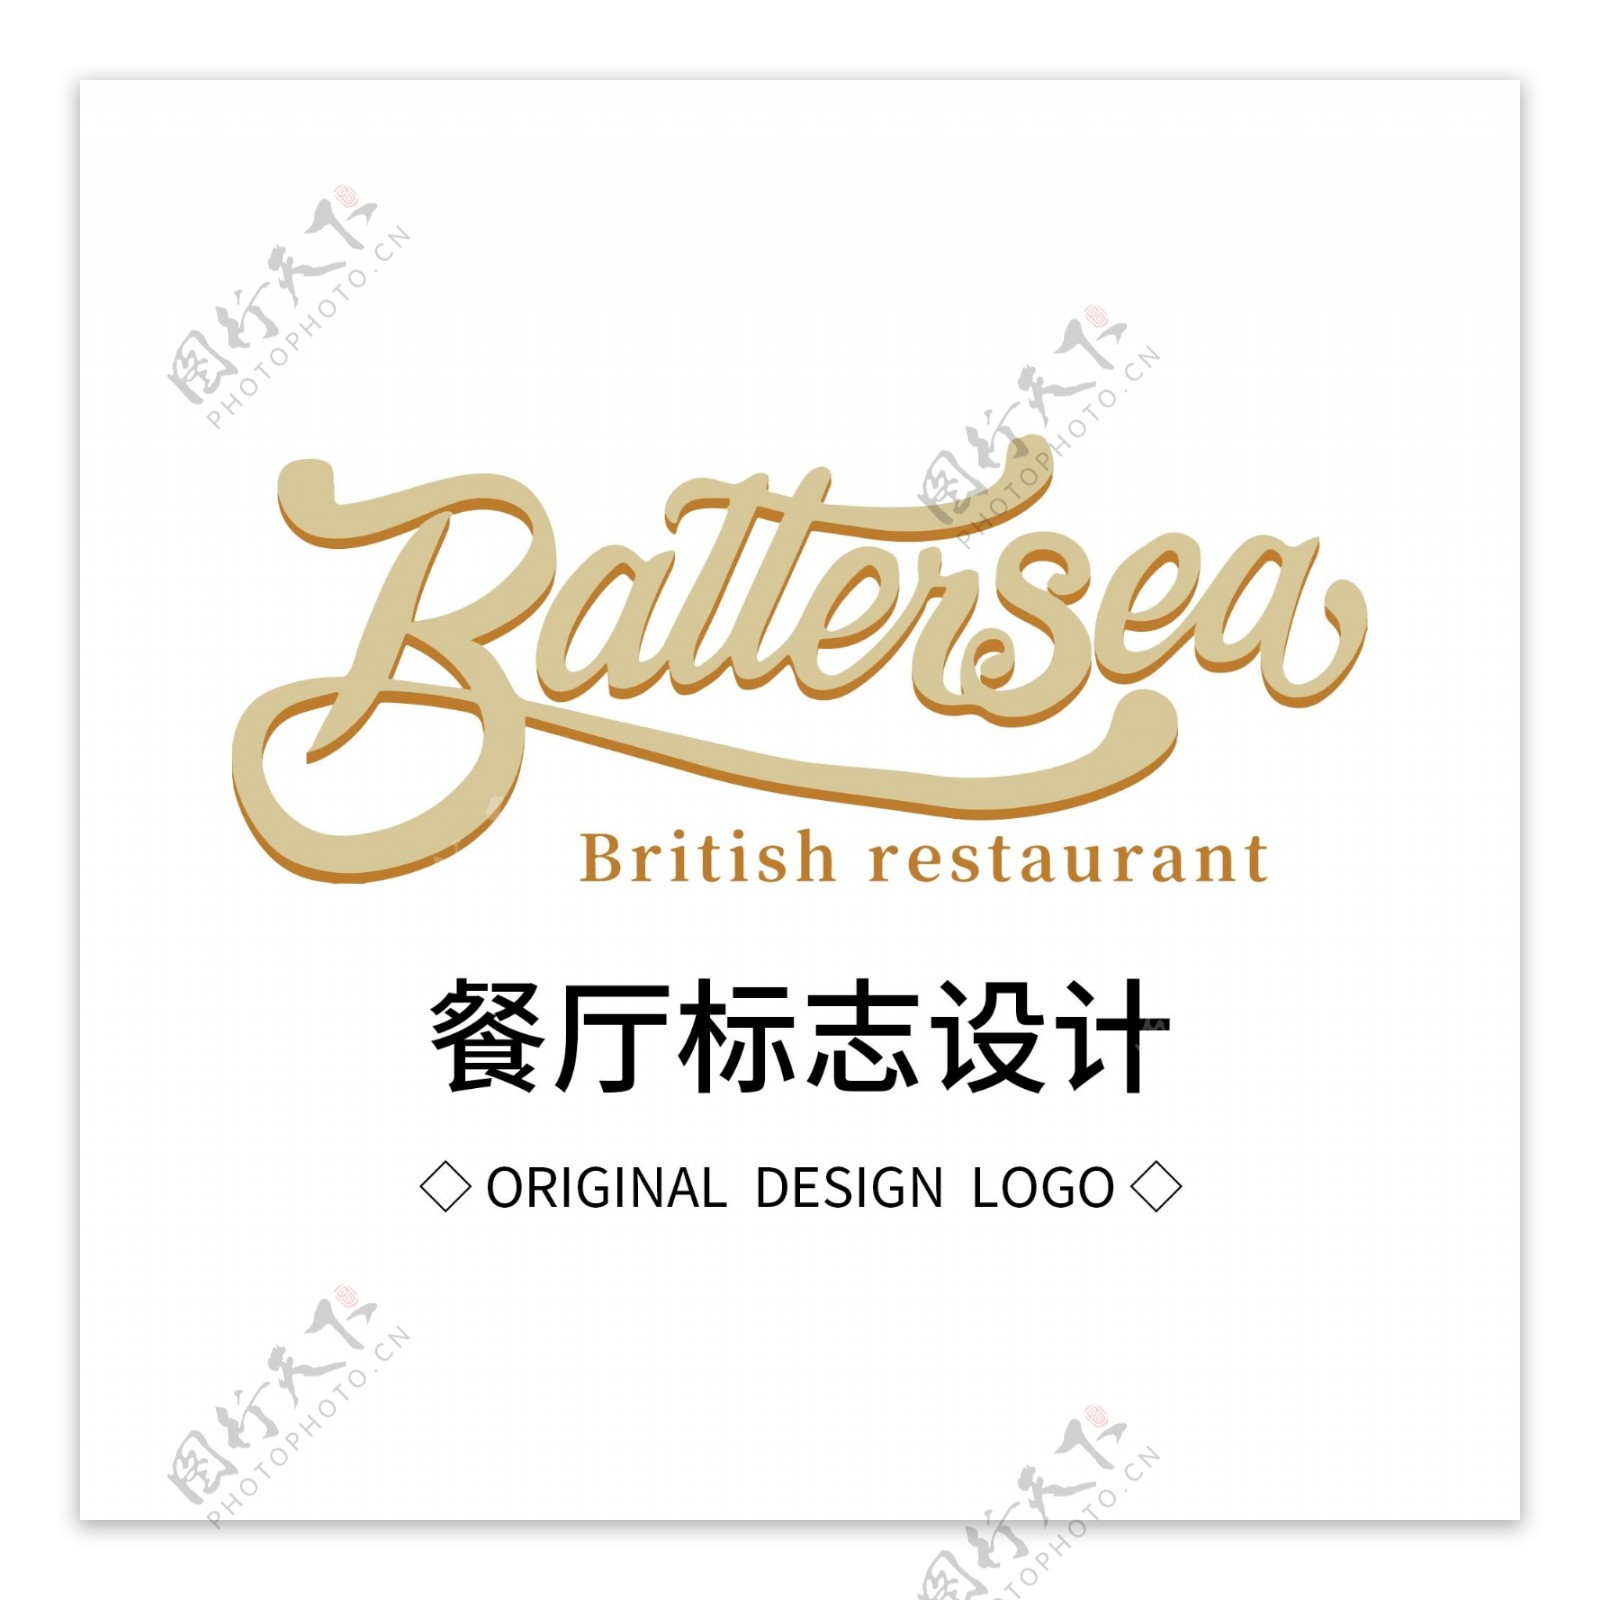 原创餐厅标志设计